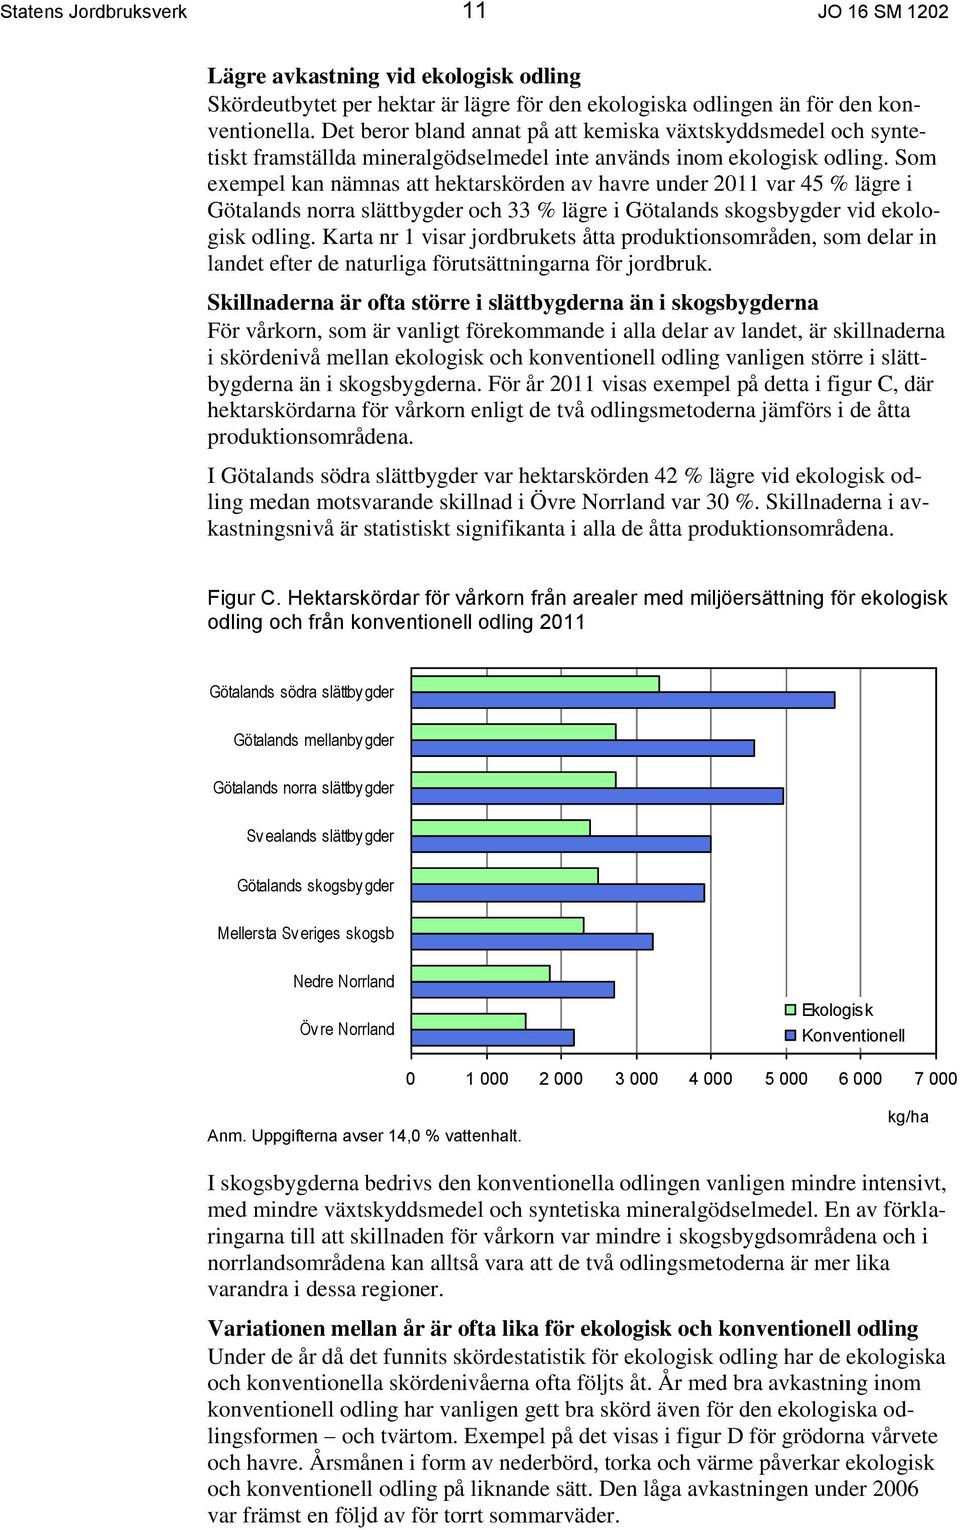 Som exempel kan nämnas att hektarskörden av havre under 2011 var 45 % lägre i Götalands norra slättbygder och 33 % lägre i Götalands skogsbygder vid ekologisk odling.